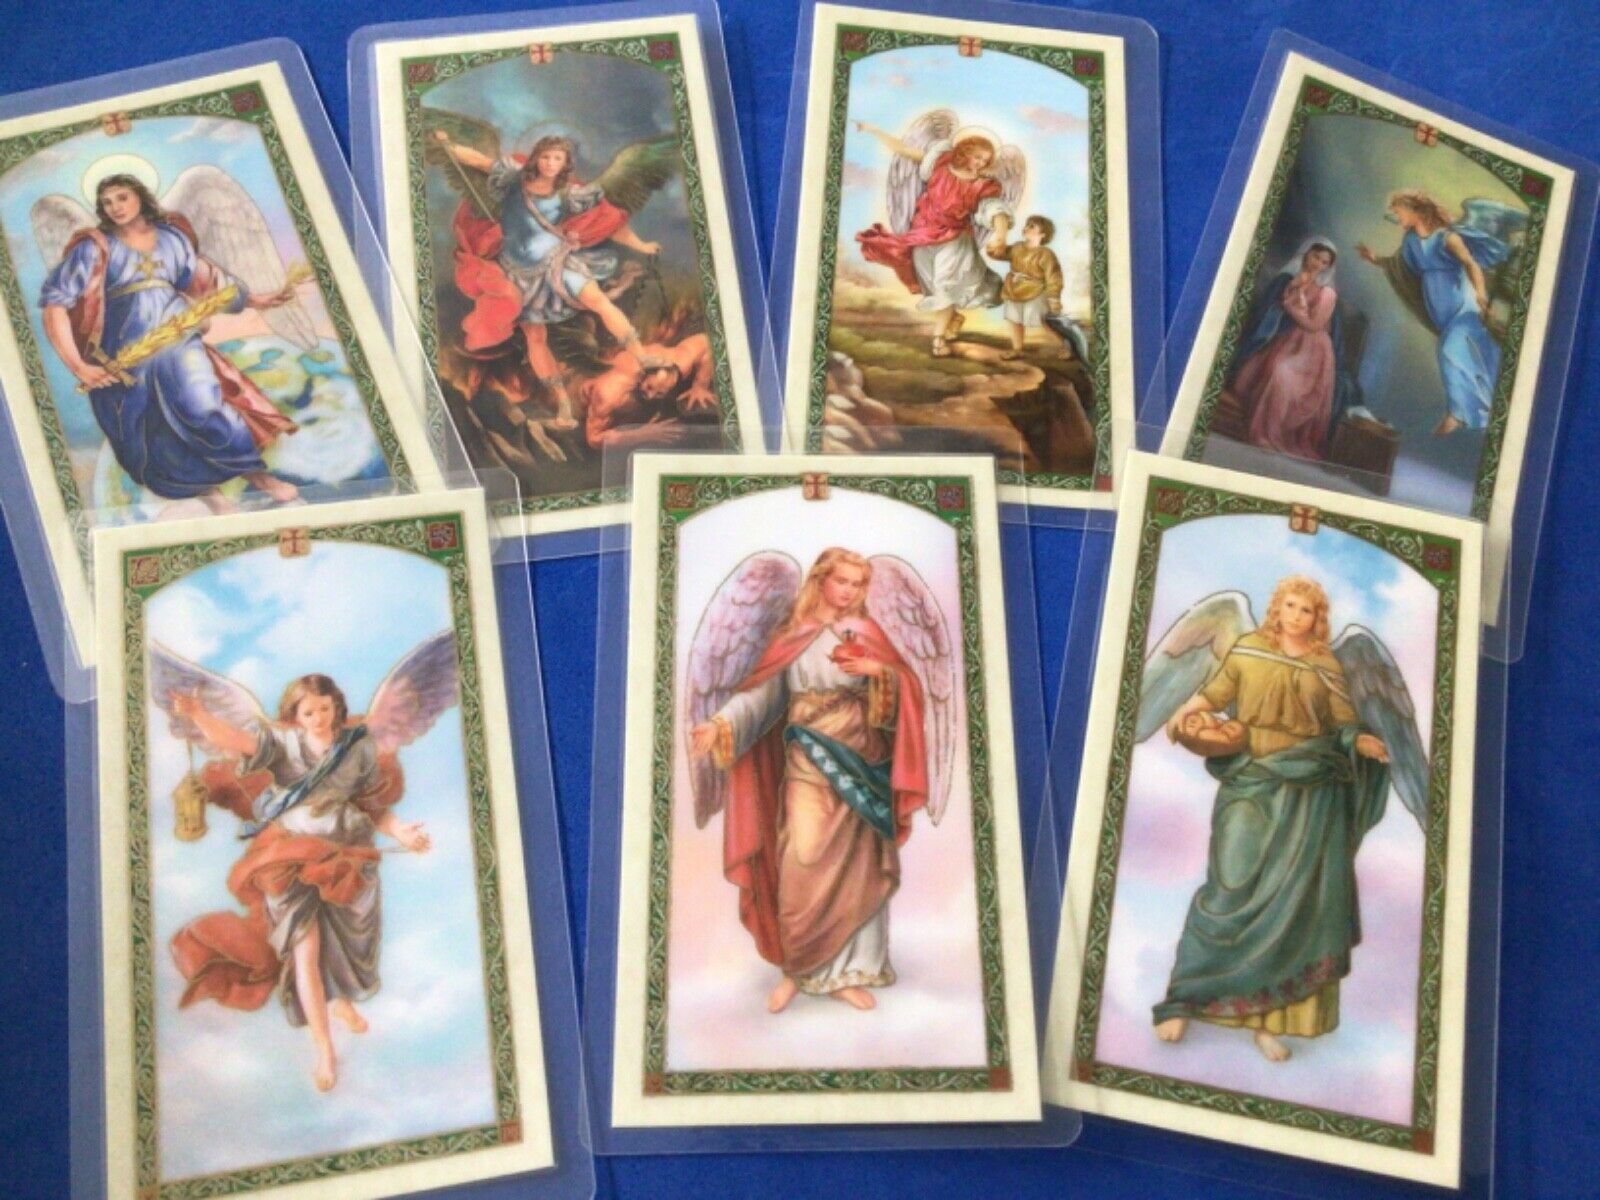 7 Archangels laminated HOLY CARDS Saint Michael Raphael Gabriel Uriel Barachiel